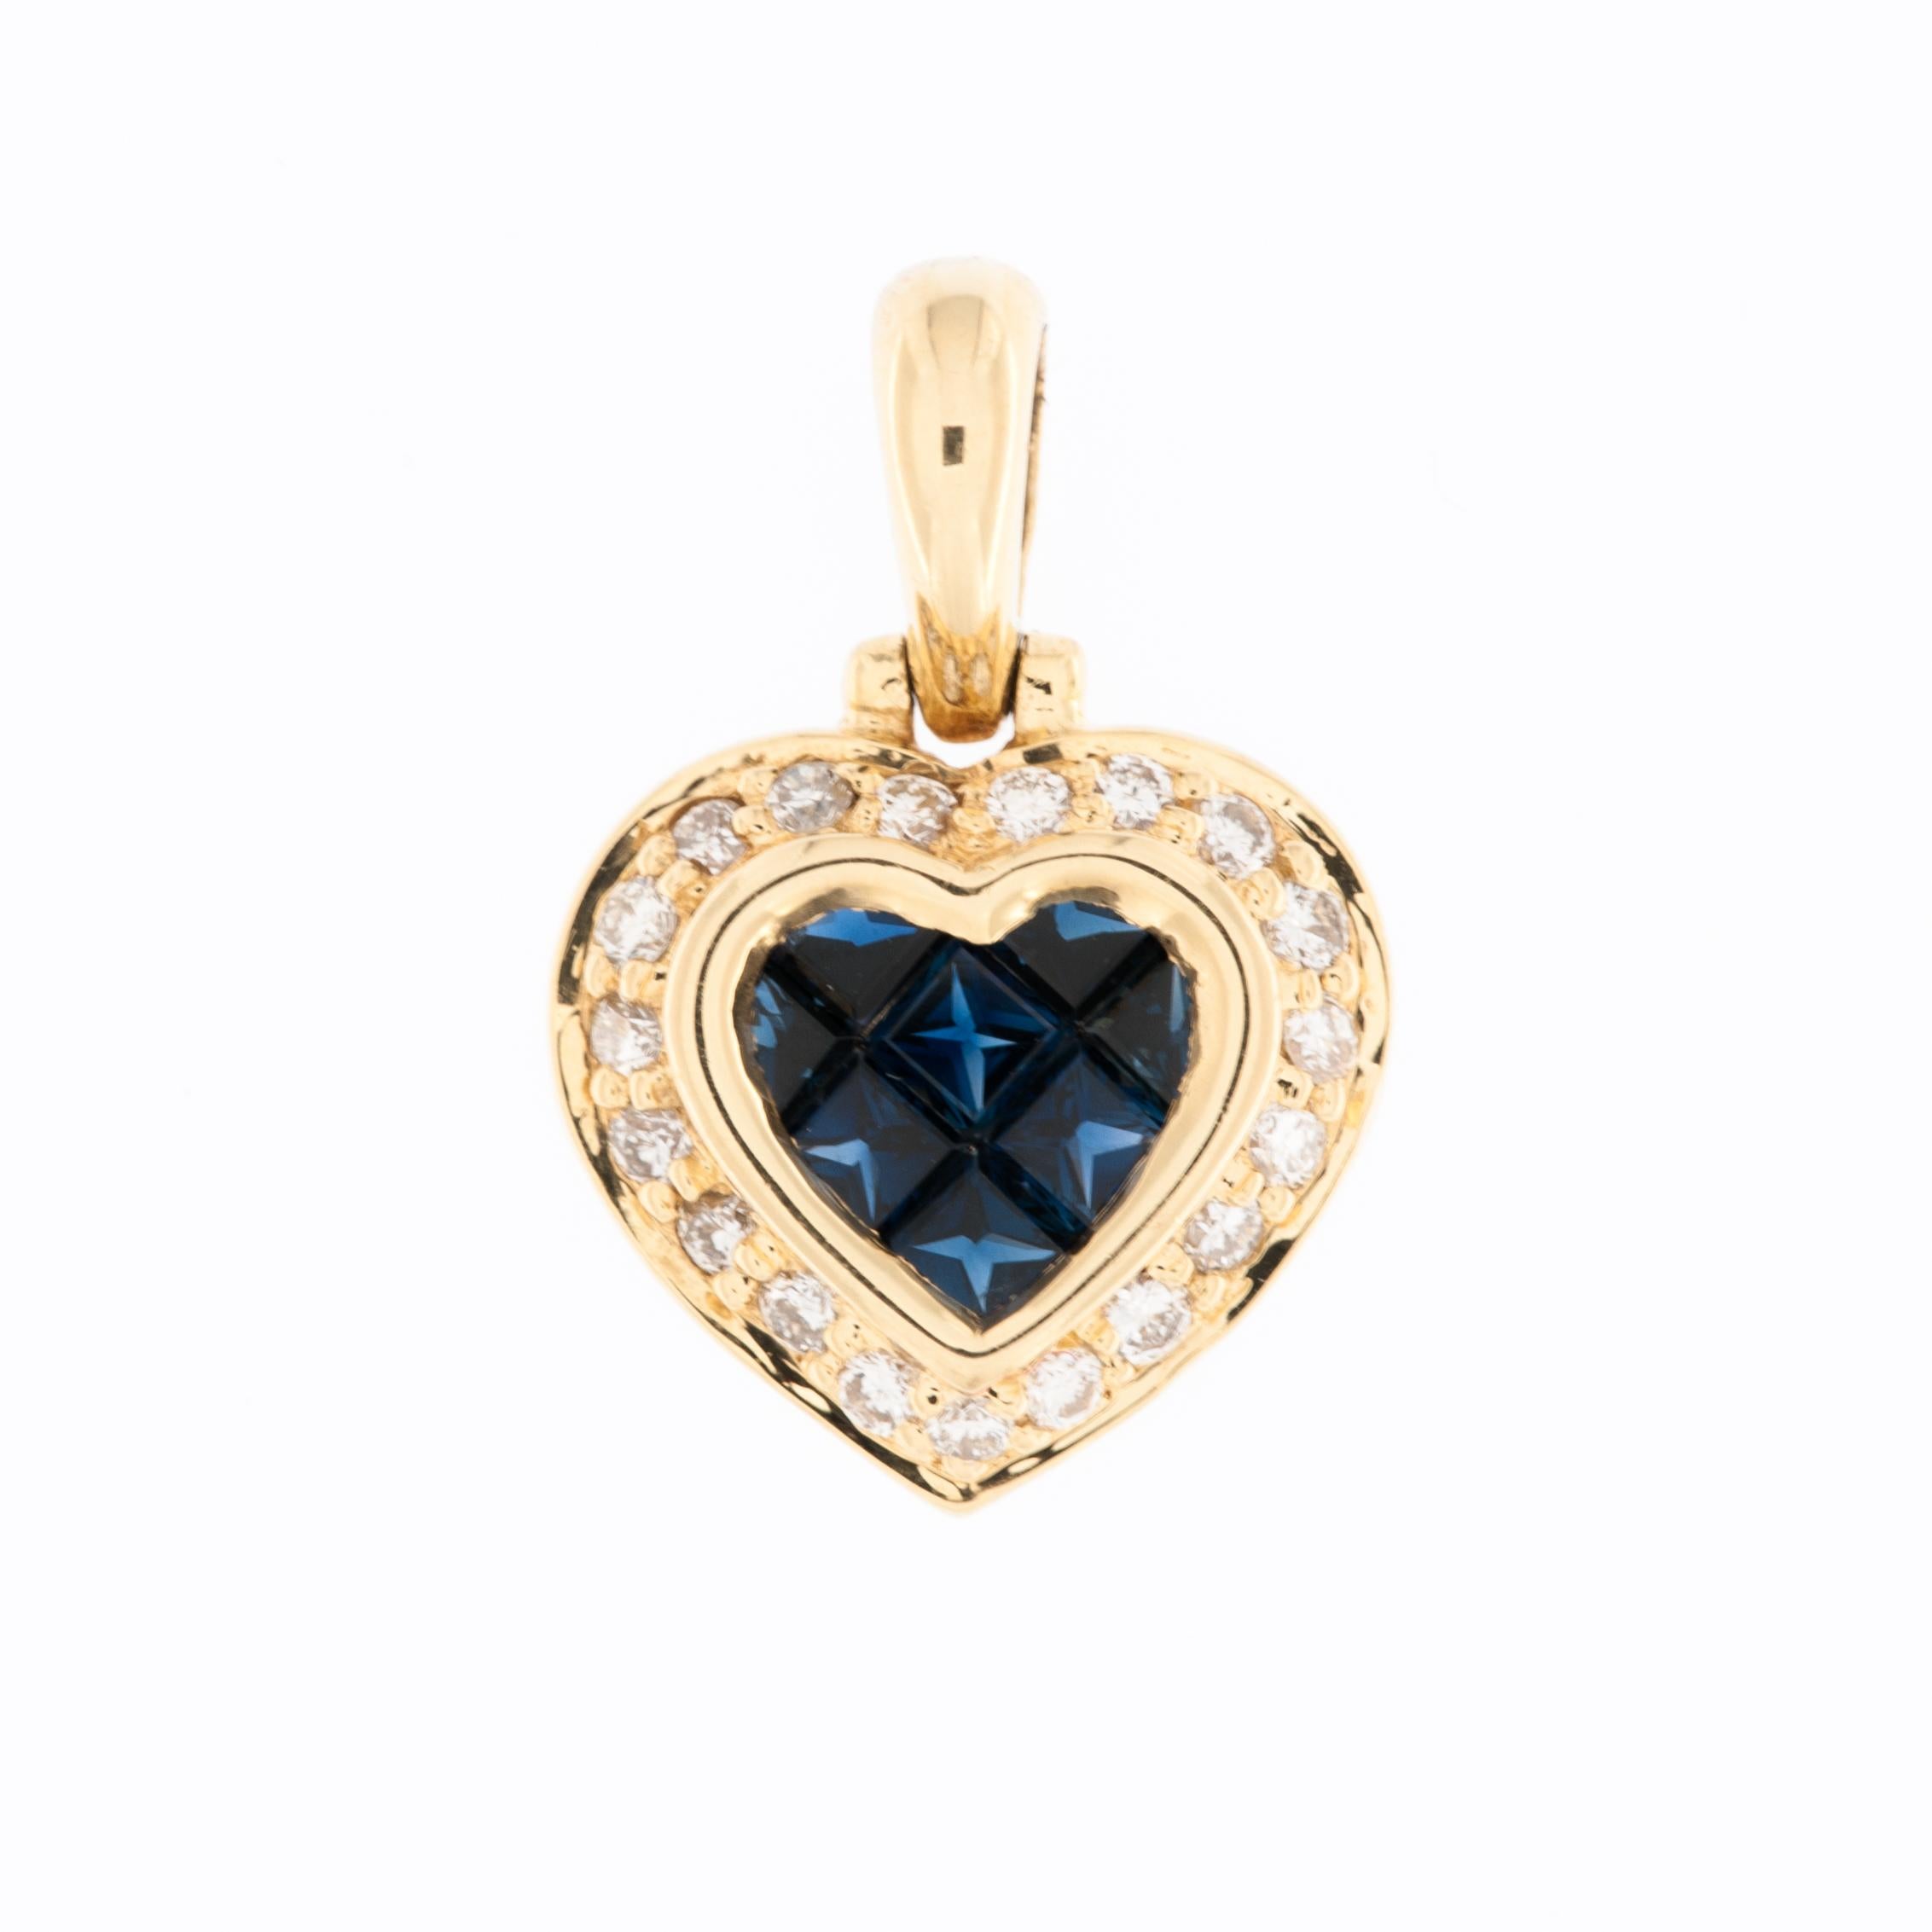 Le pendentif cœur Vintage French Diamonds and Sapphires est un bijou captivant et unique qui respire le charme et la sophistication. Réalisé en or jaune 18 carats, ce pendentif présente une étonnante combinaison de diamants taille brillant et de